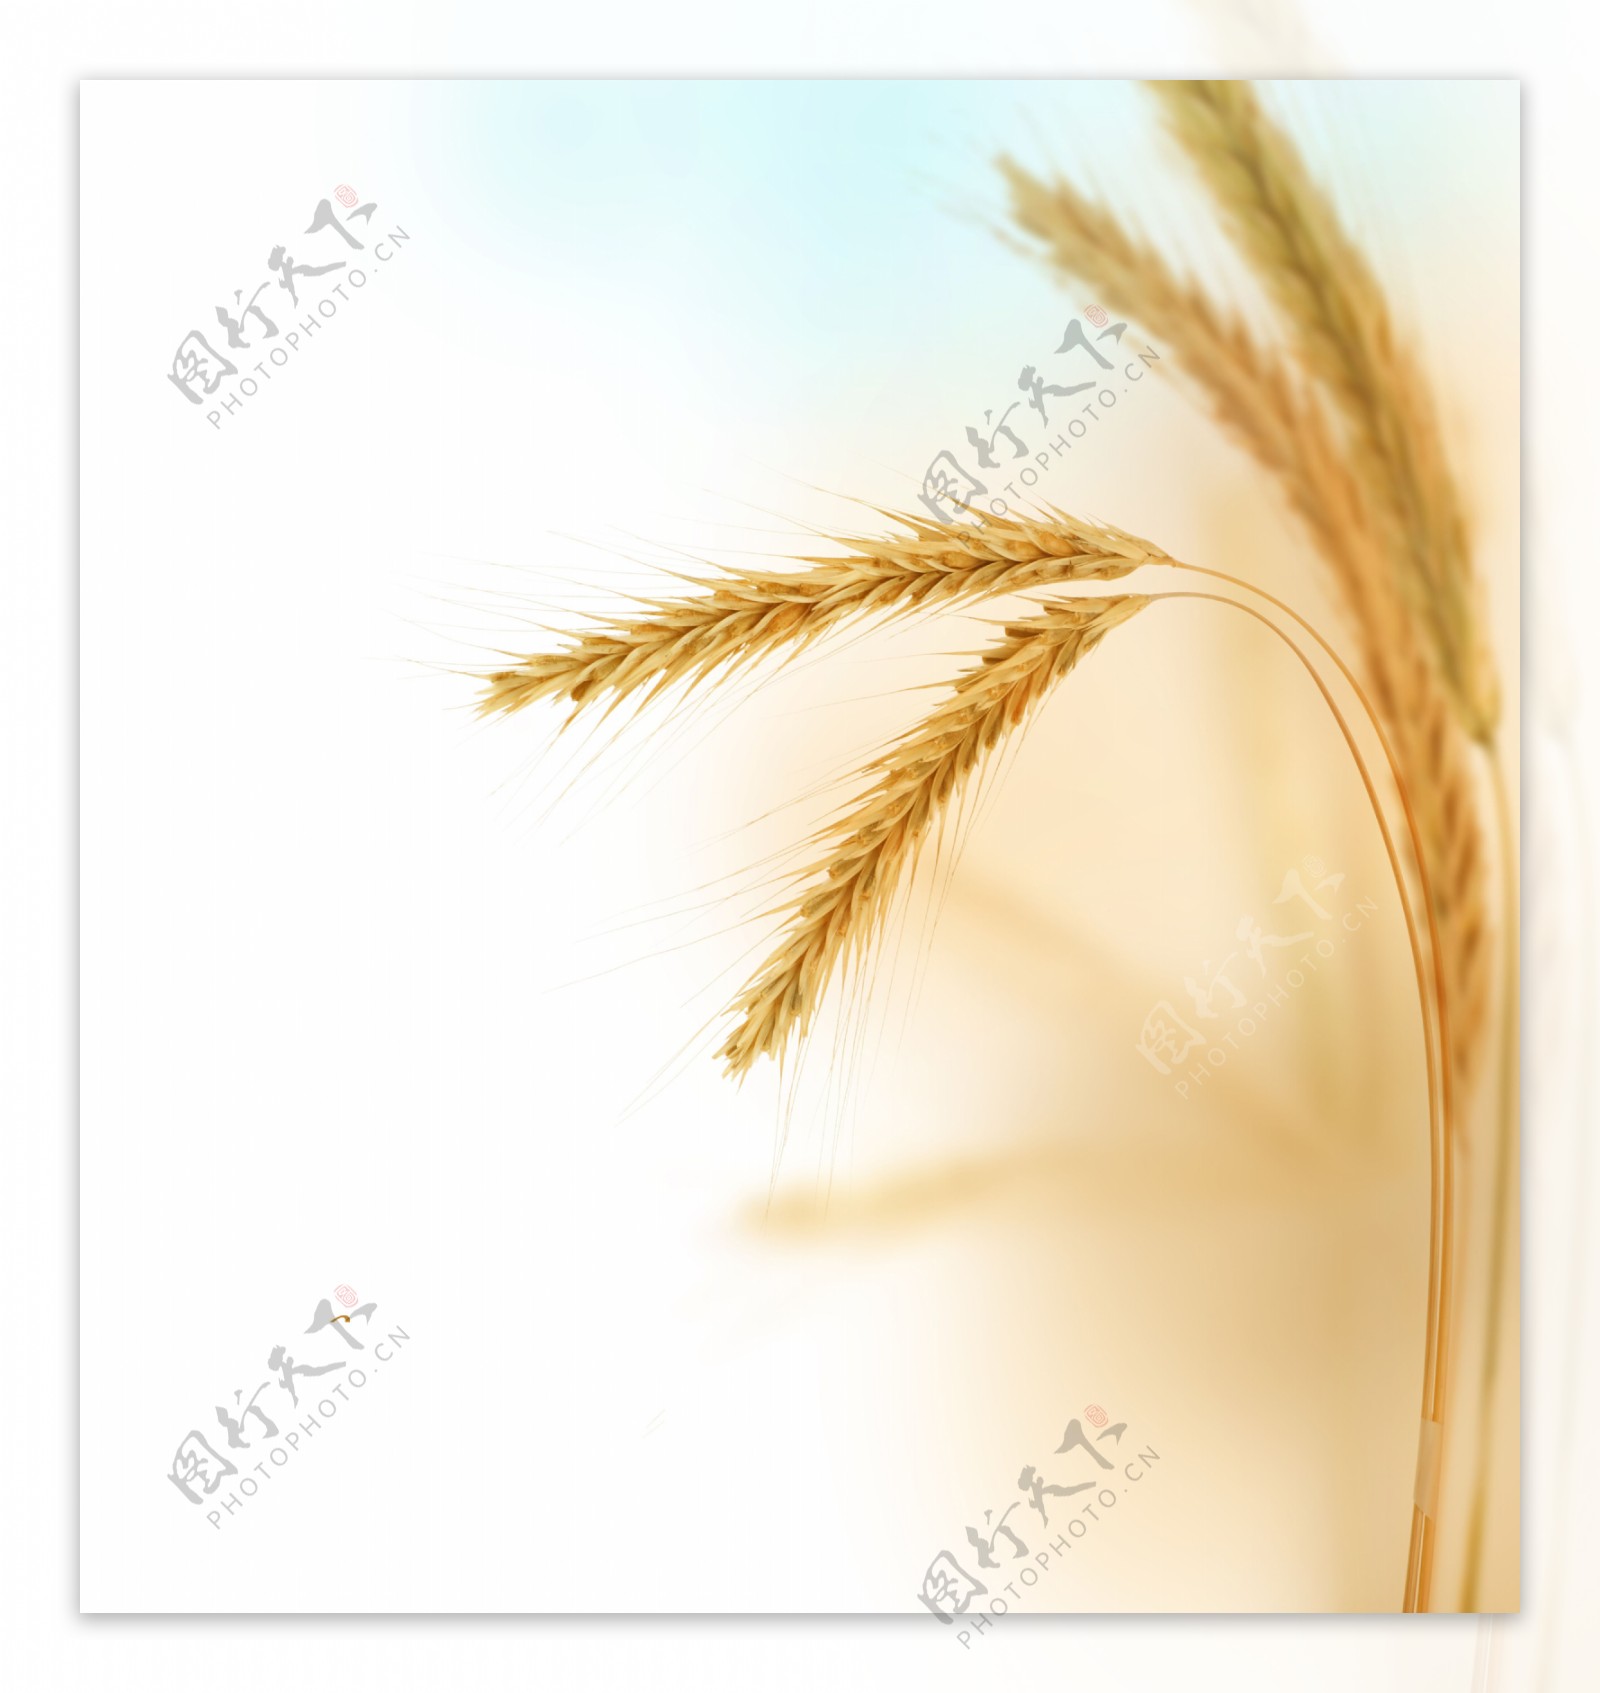 麦穗图片